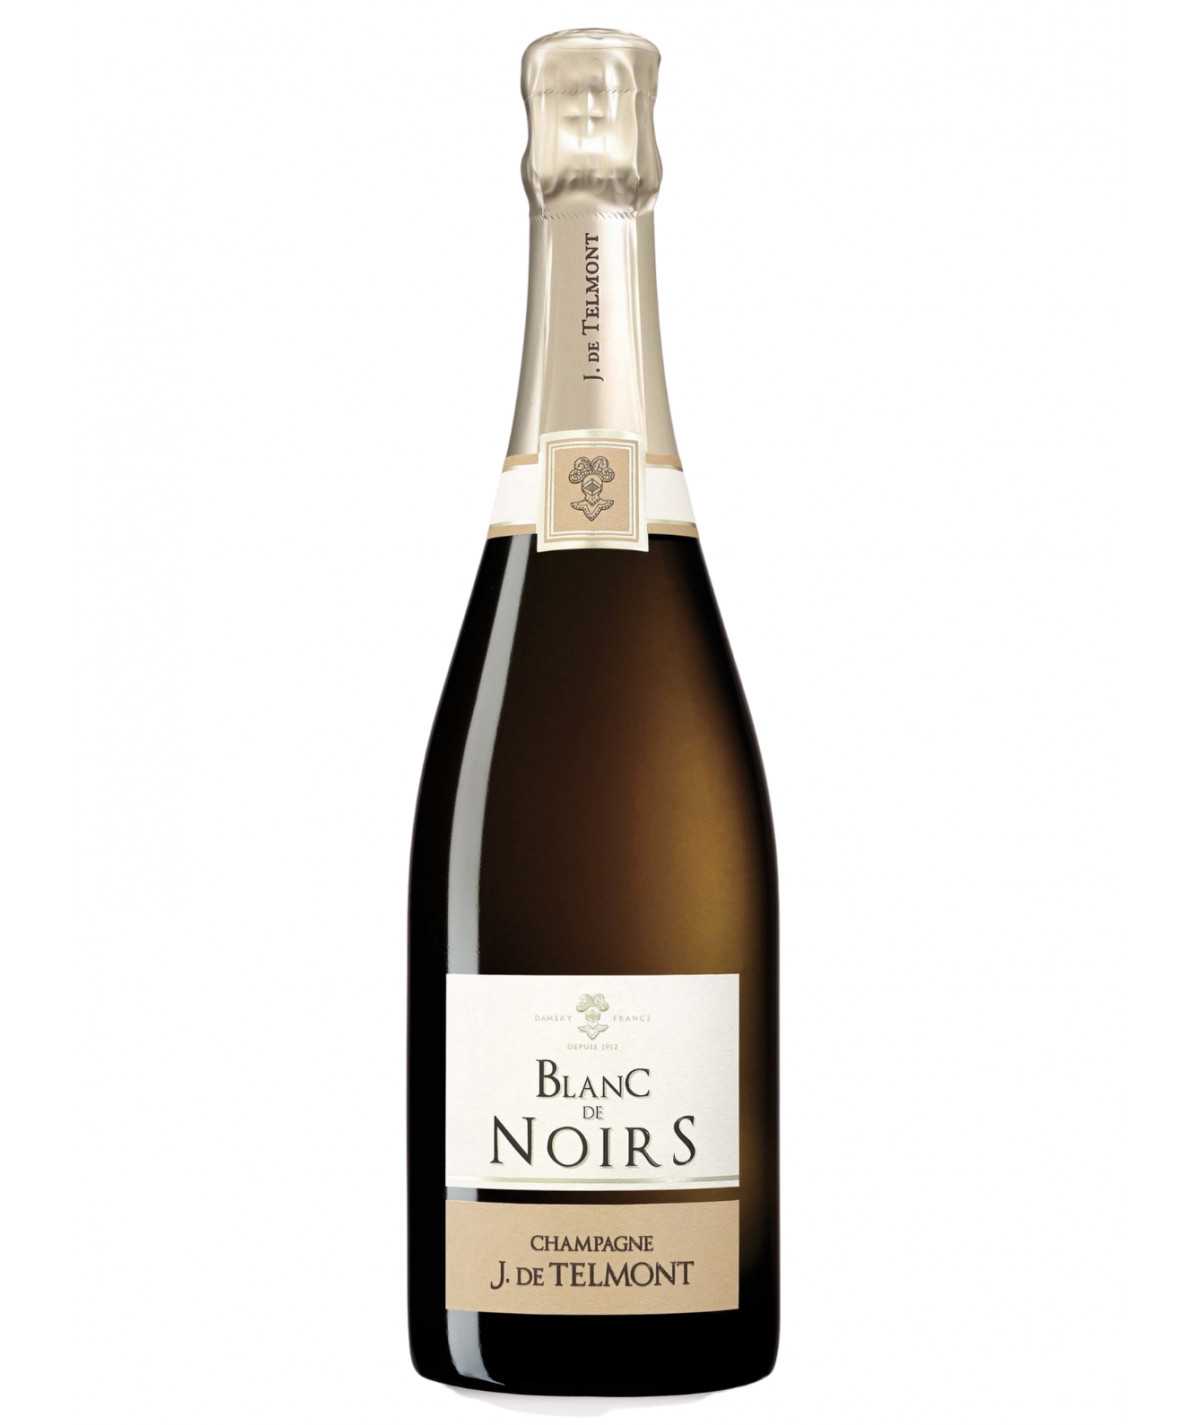 J. DE TELMONT Champagne Blanc de Noirs Brut 2013 vintage